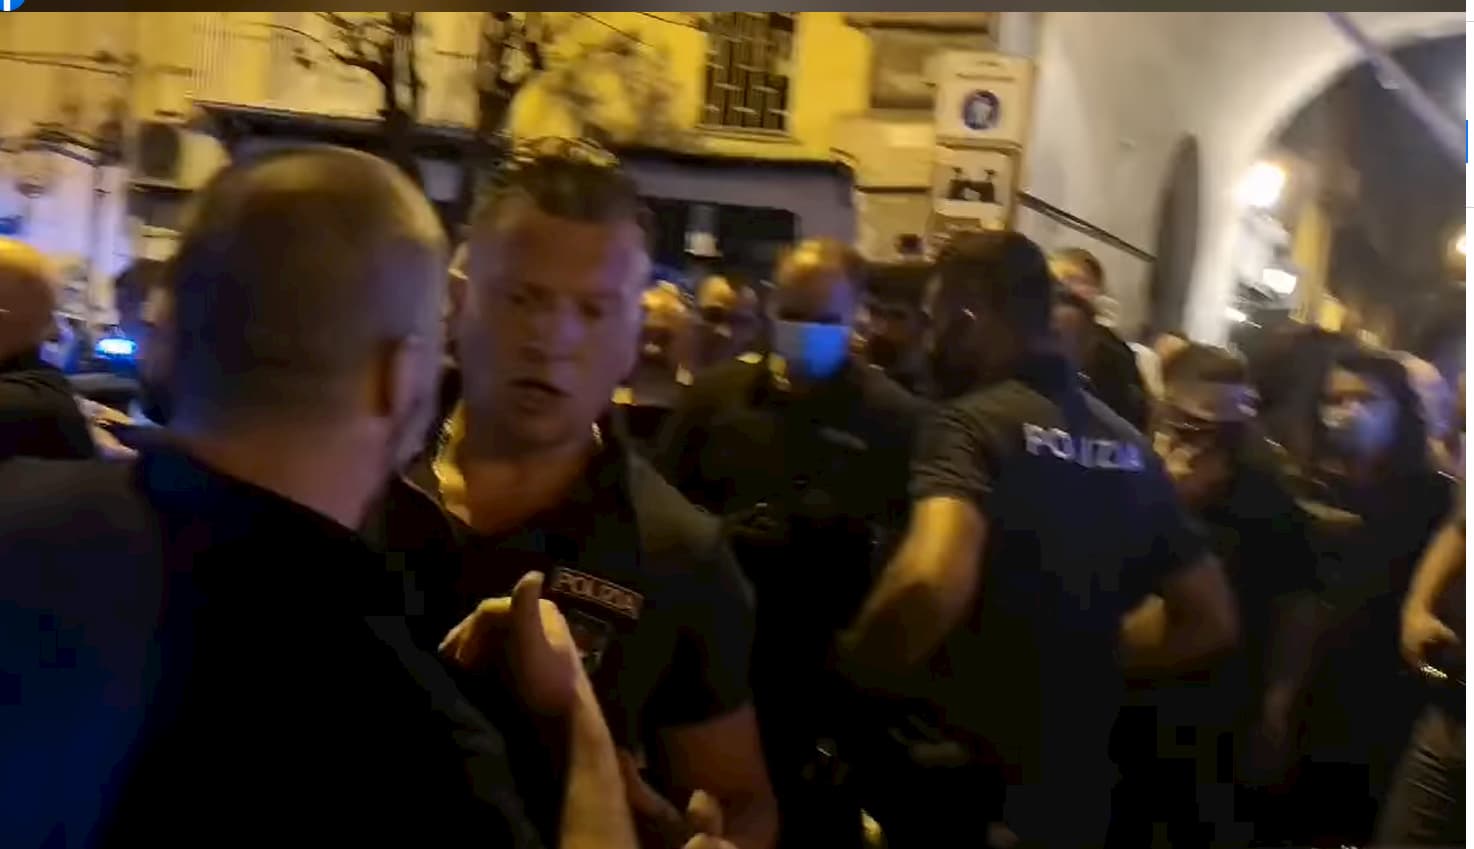 Caos a piazza Bellini per i controlli anti-movida: cori contro la polizia, agenti accerchiati e insultati